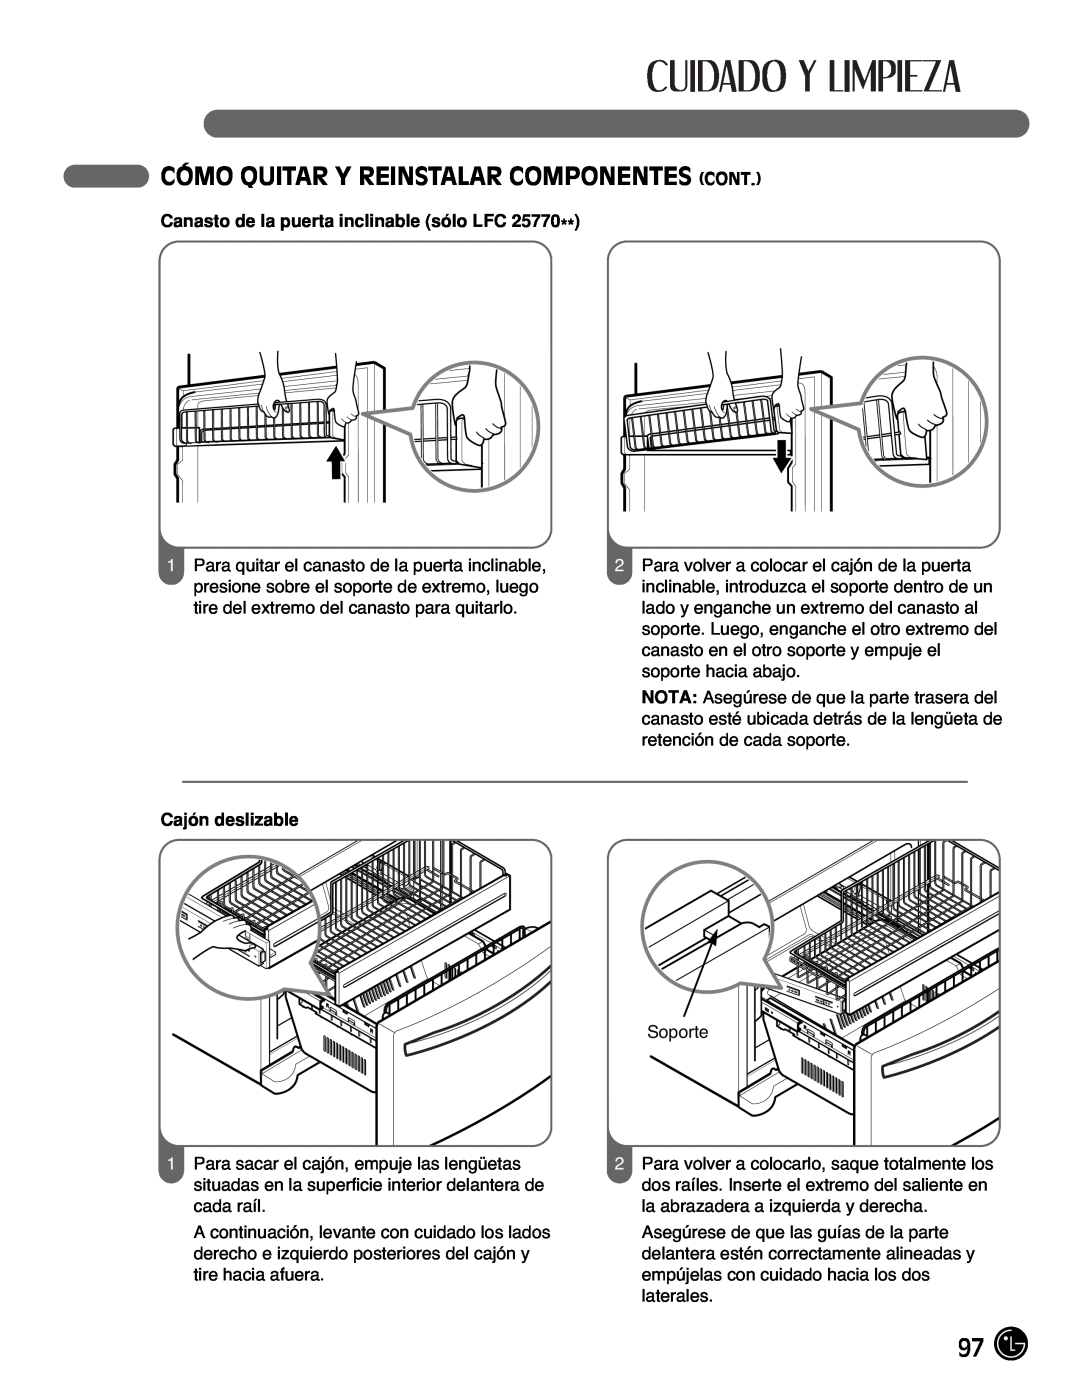 LG Electronics LFC25770, LFC21770 manual Cómo Quitar Y Reinstalar Componentes Cont, Canasto de la puerta inclinable sólo LFC 